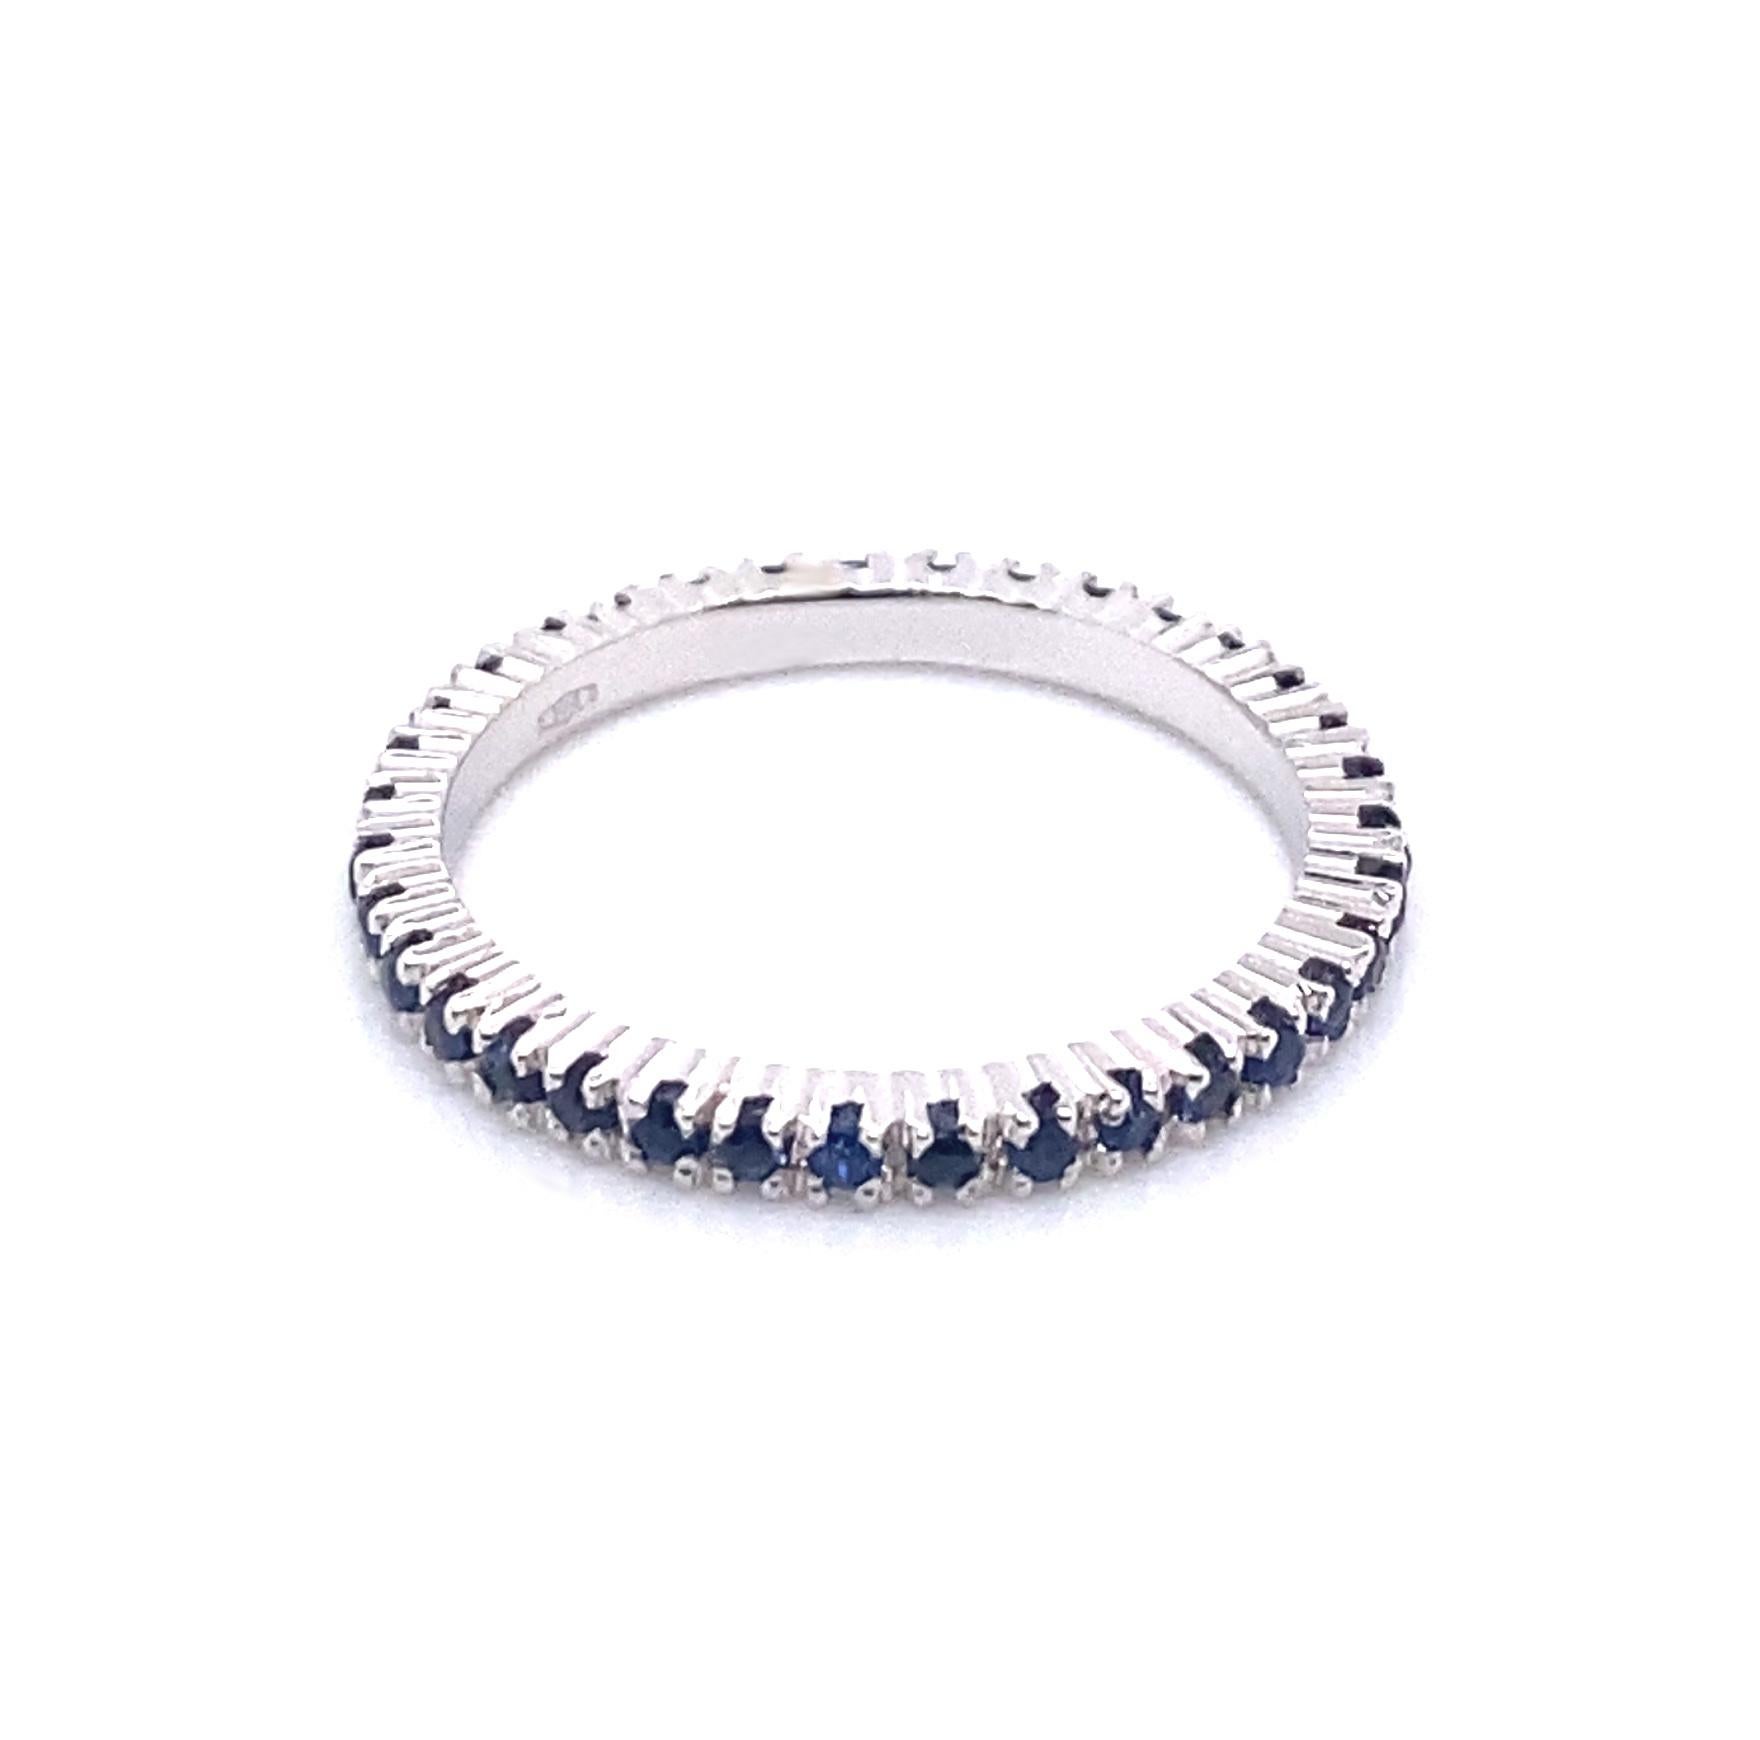 Ein Ewigkeitsring aus 18 Karat Weißgold und einem blauen Saphir von 0,46 Karat. Dieser elegante und zeitlose Ring verleiht Ihrem Stapel an Schmuckstücken Tiefe und Glanz und lässt sich auch wunderbar allein tragen.

Der fotografierte Ring hat eine